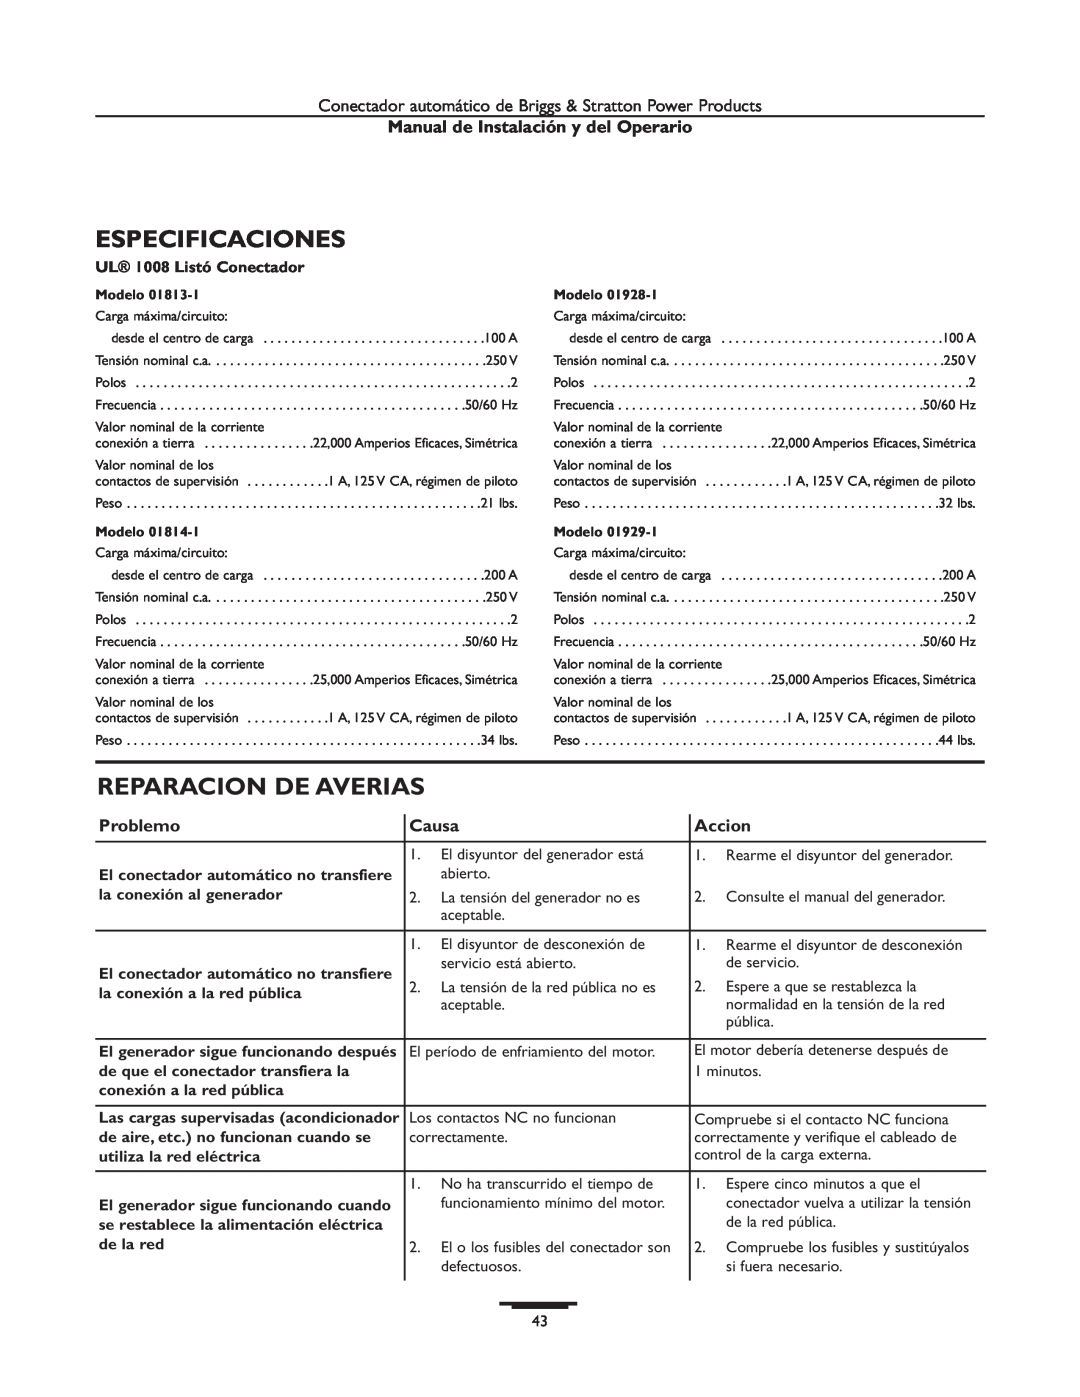 Briggs & Stratton 01813-1 manual Especificaciones, Reparacion De Averias, Problemo, Causa, Accion, UL 1008 Listó Conectador 